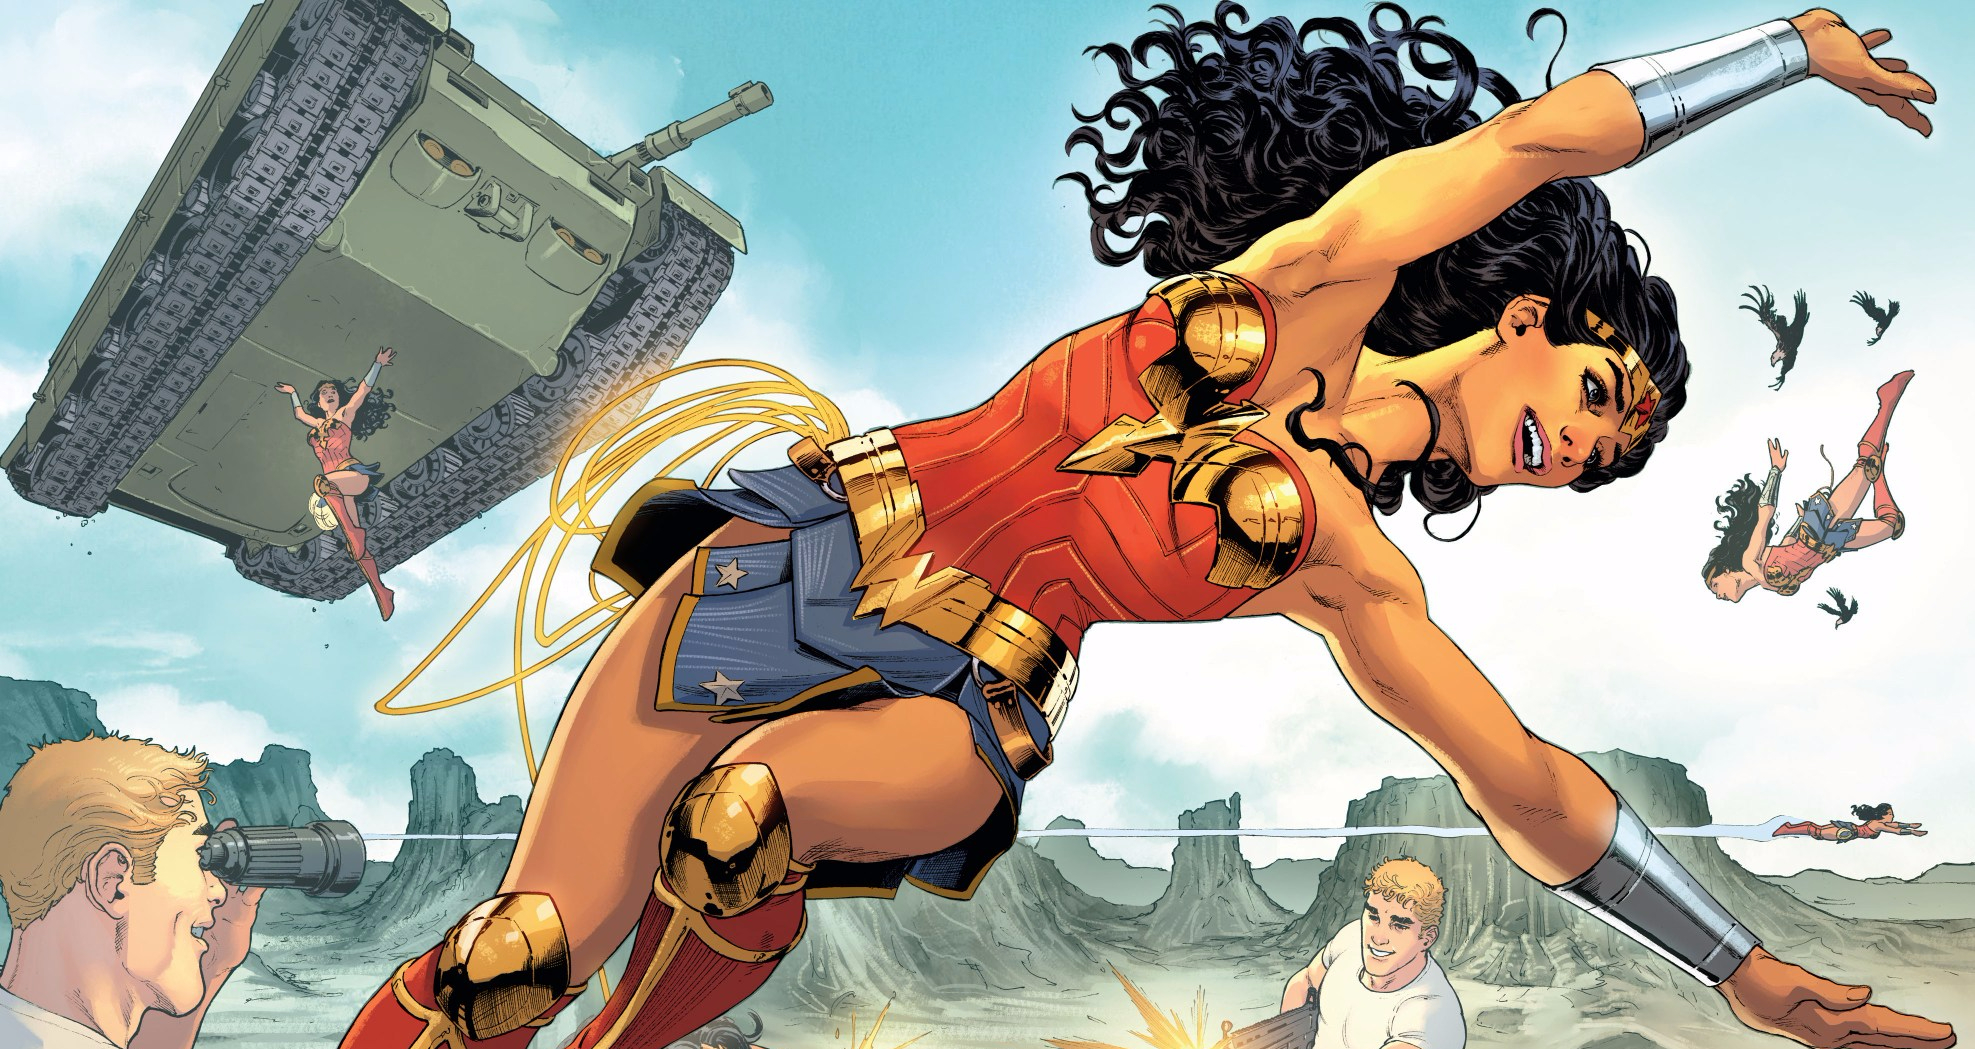 Greg Rucka non sarà più lo scrittore di Wonder Woman